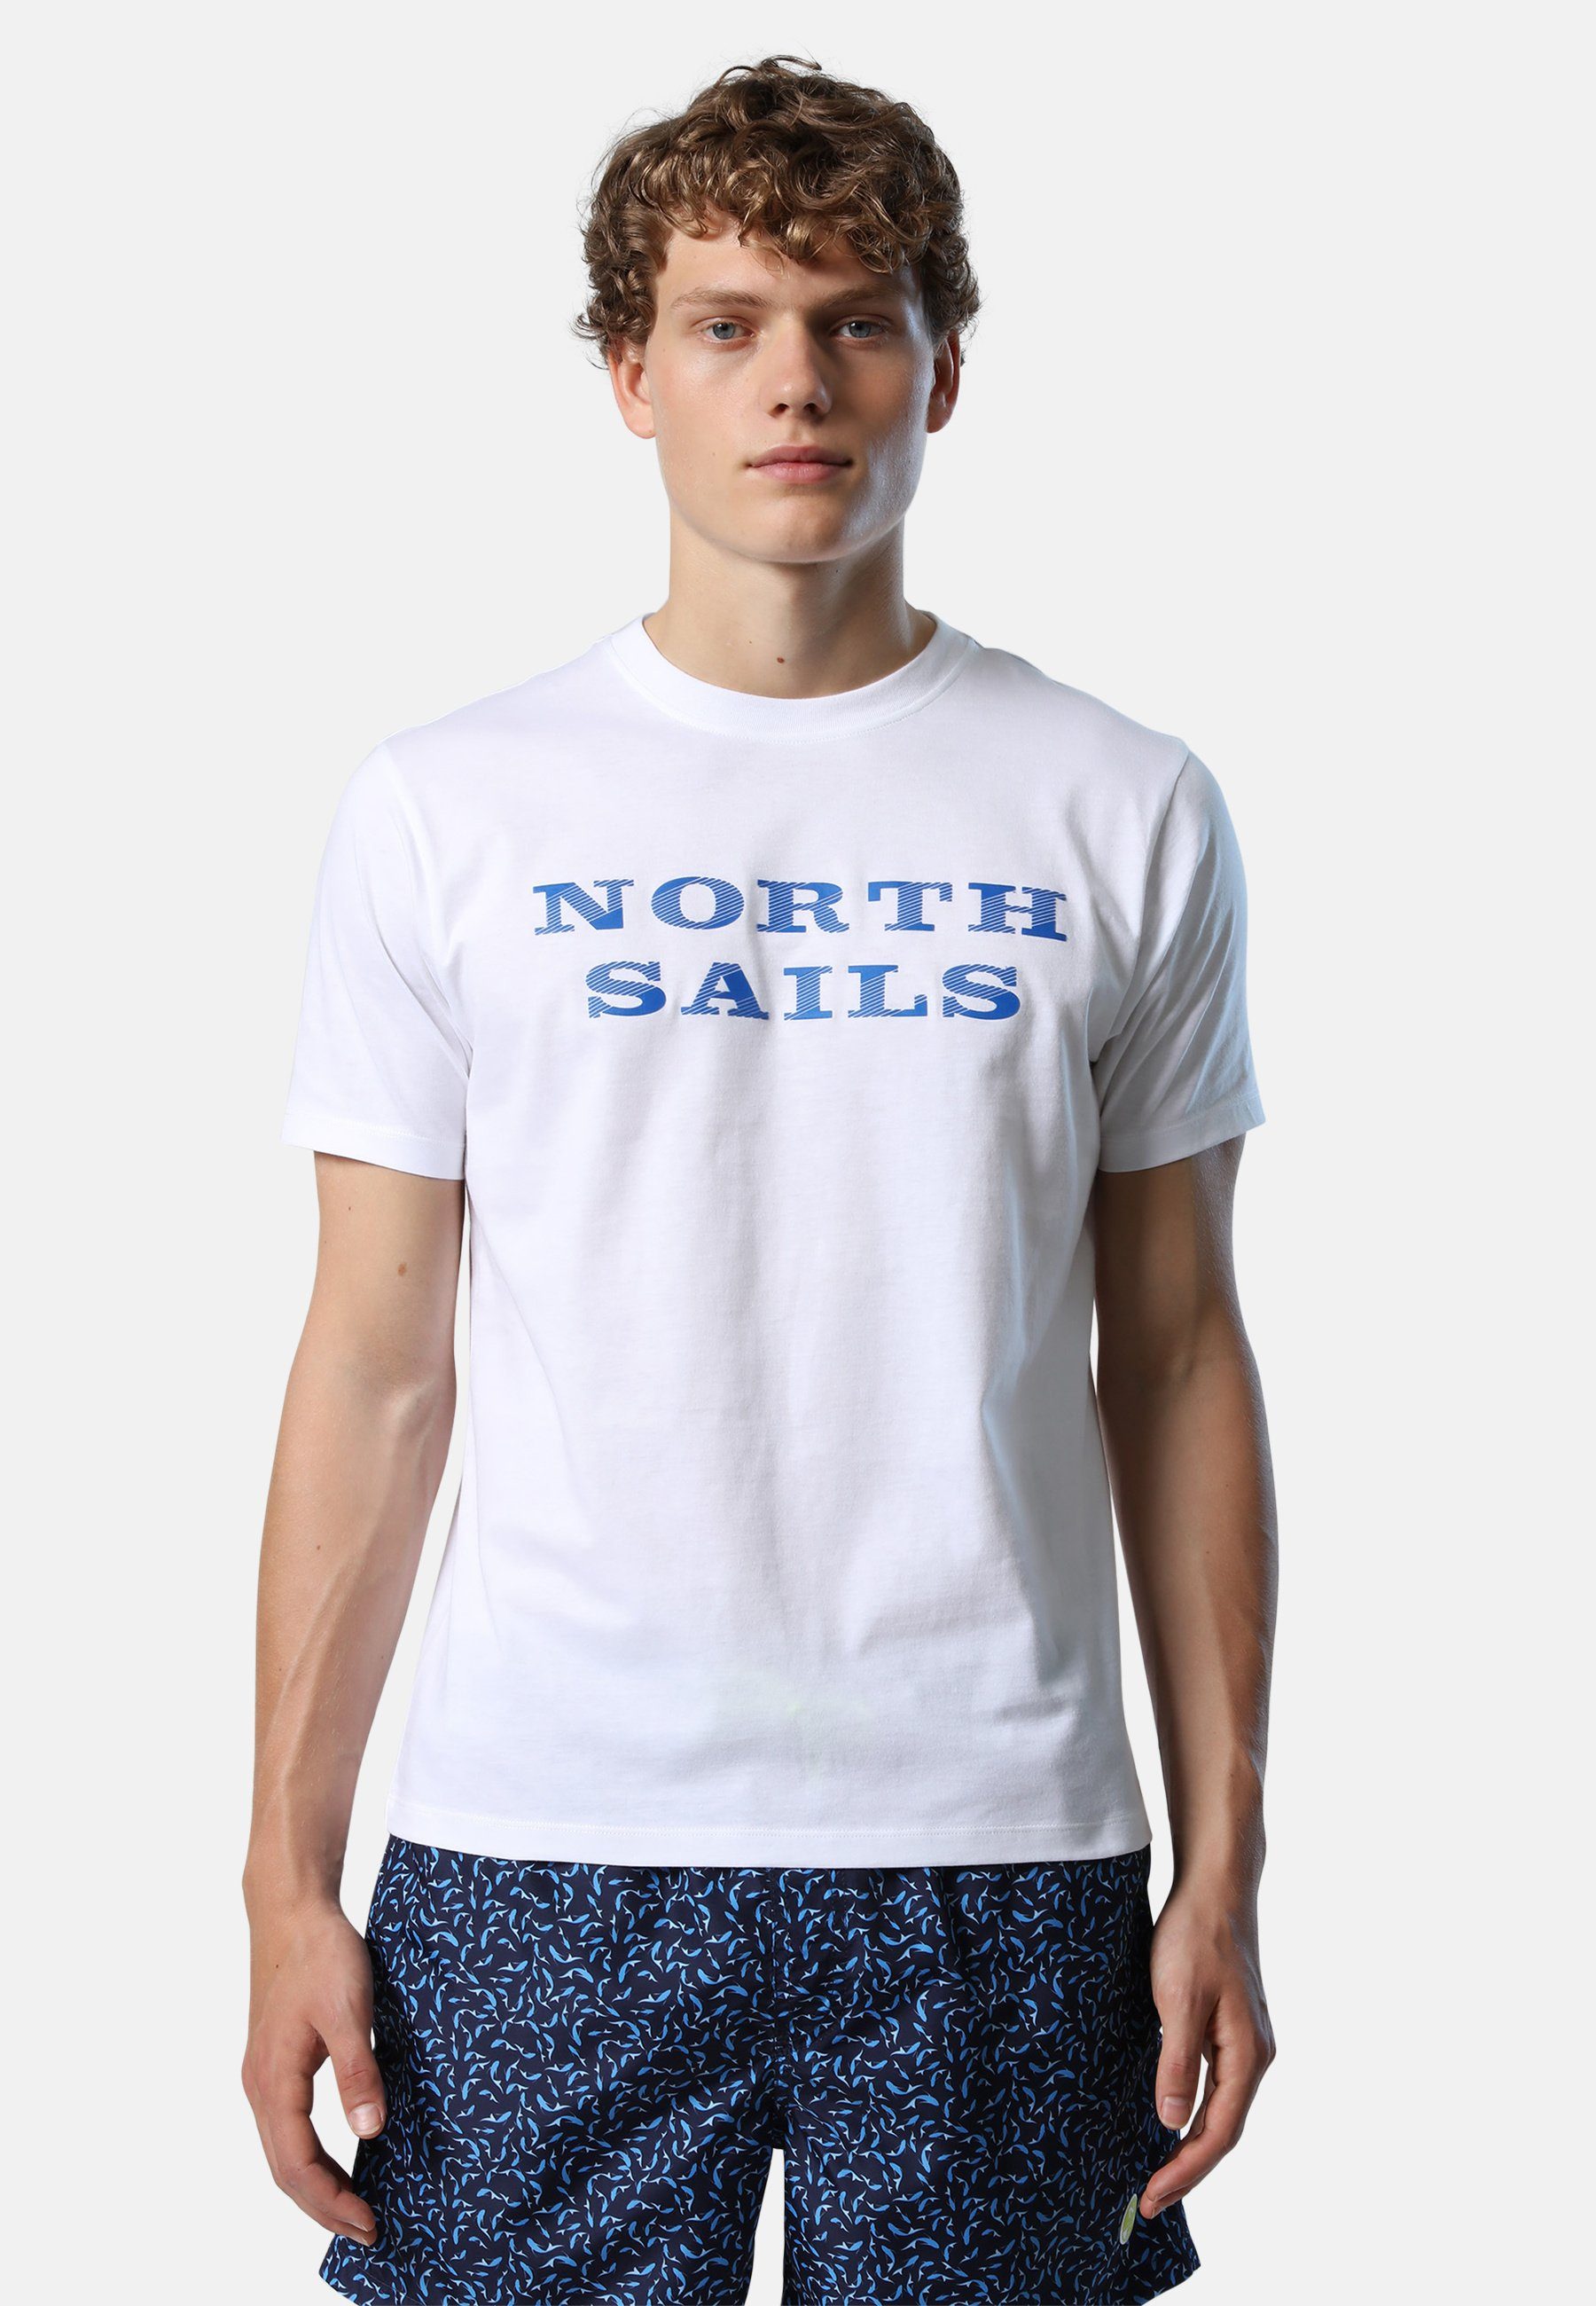 T-Shirt mit North Brustaufdruck weiss T-Shirt Ton-in-Ton-Nähte Sails